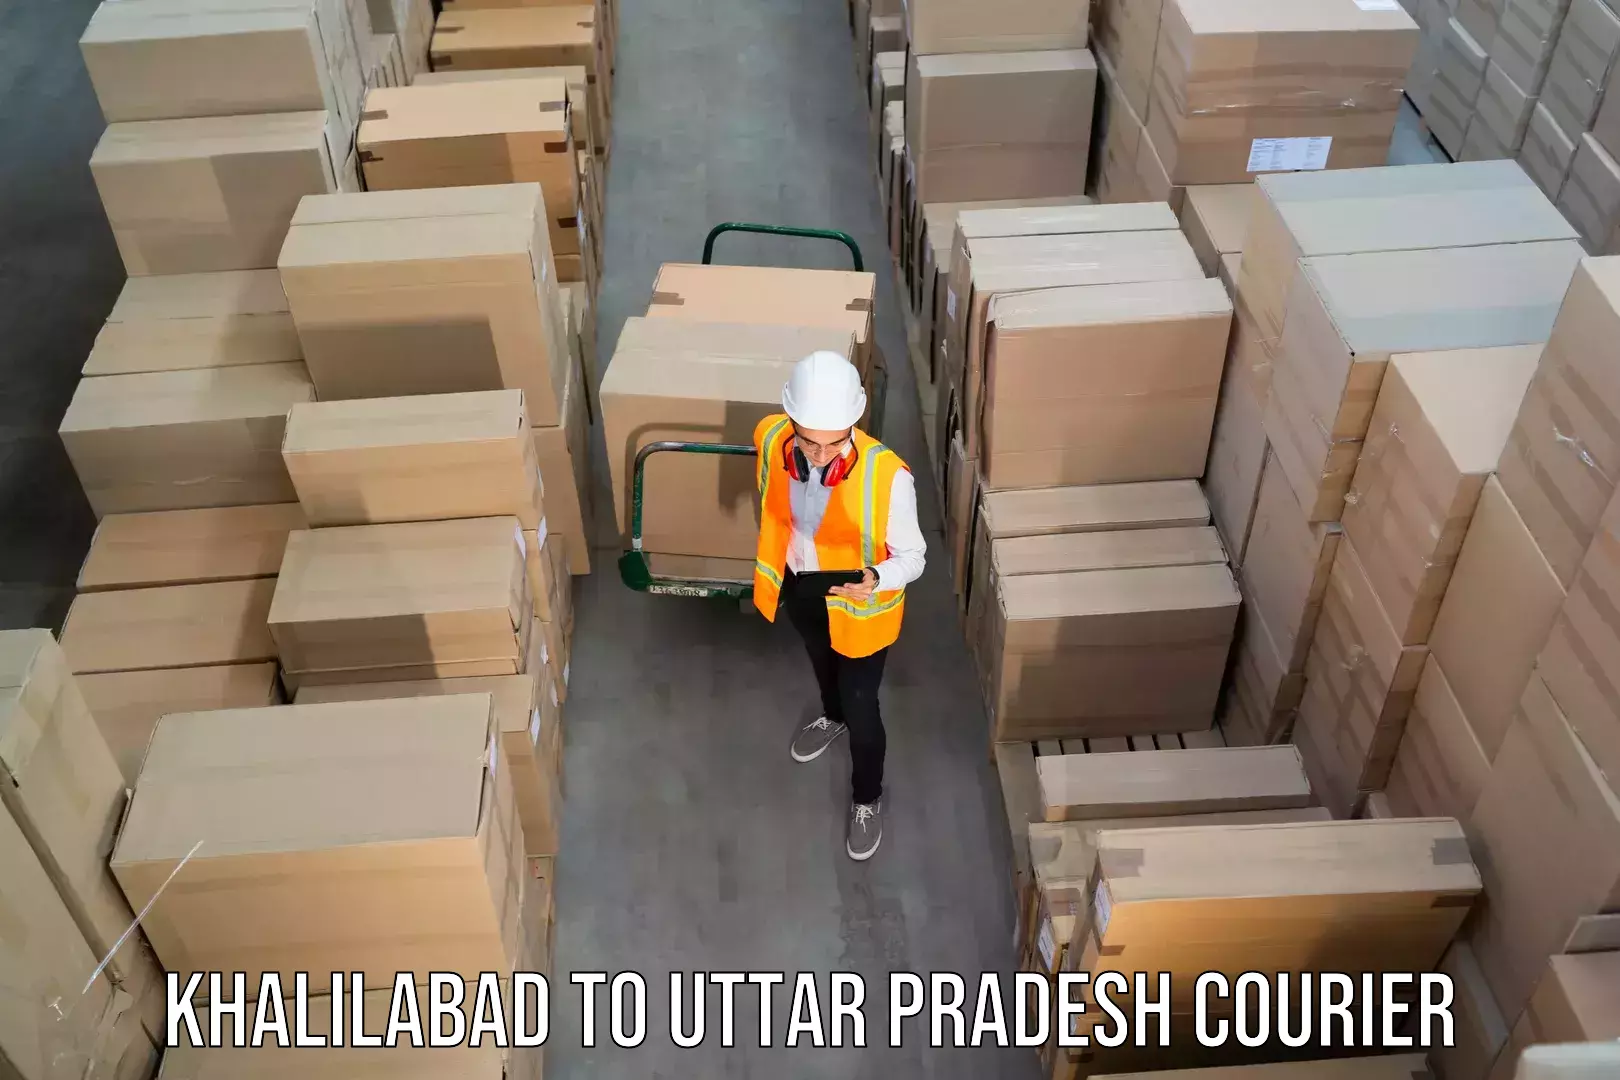 Weekend courier service Khalilabad to Uttar Pradesh